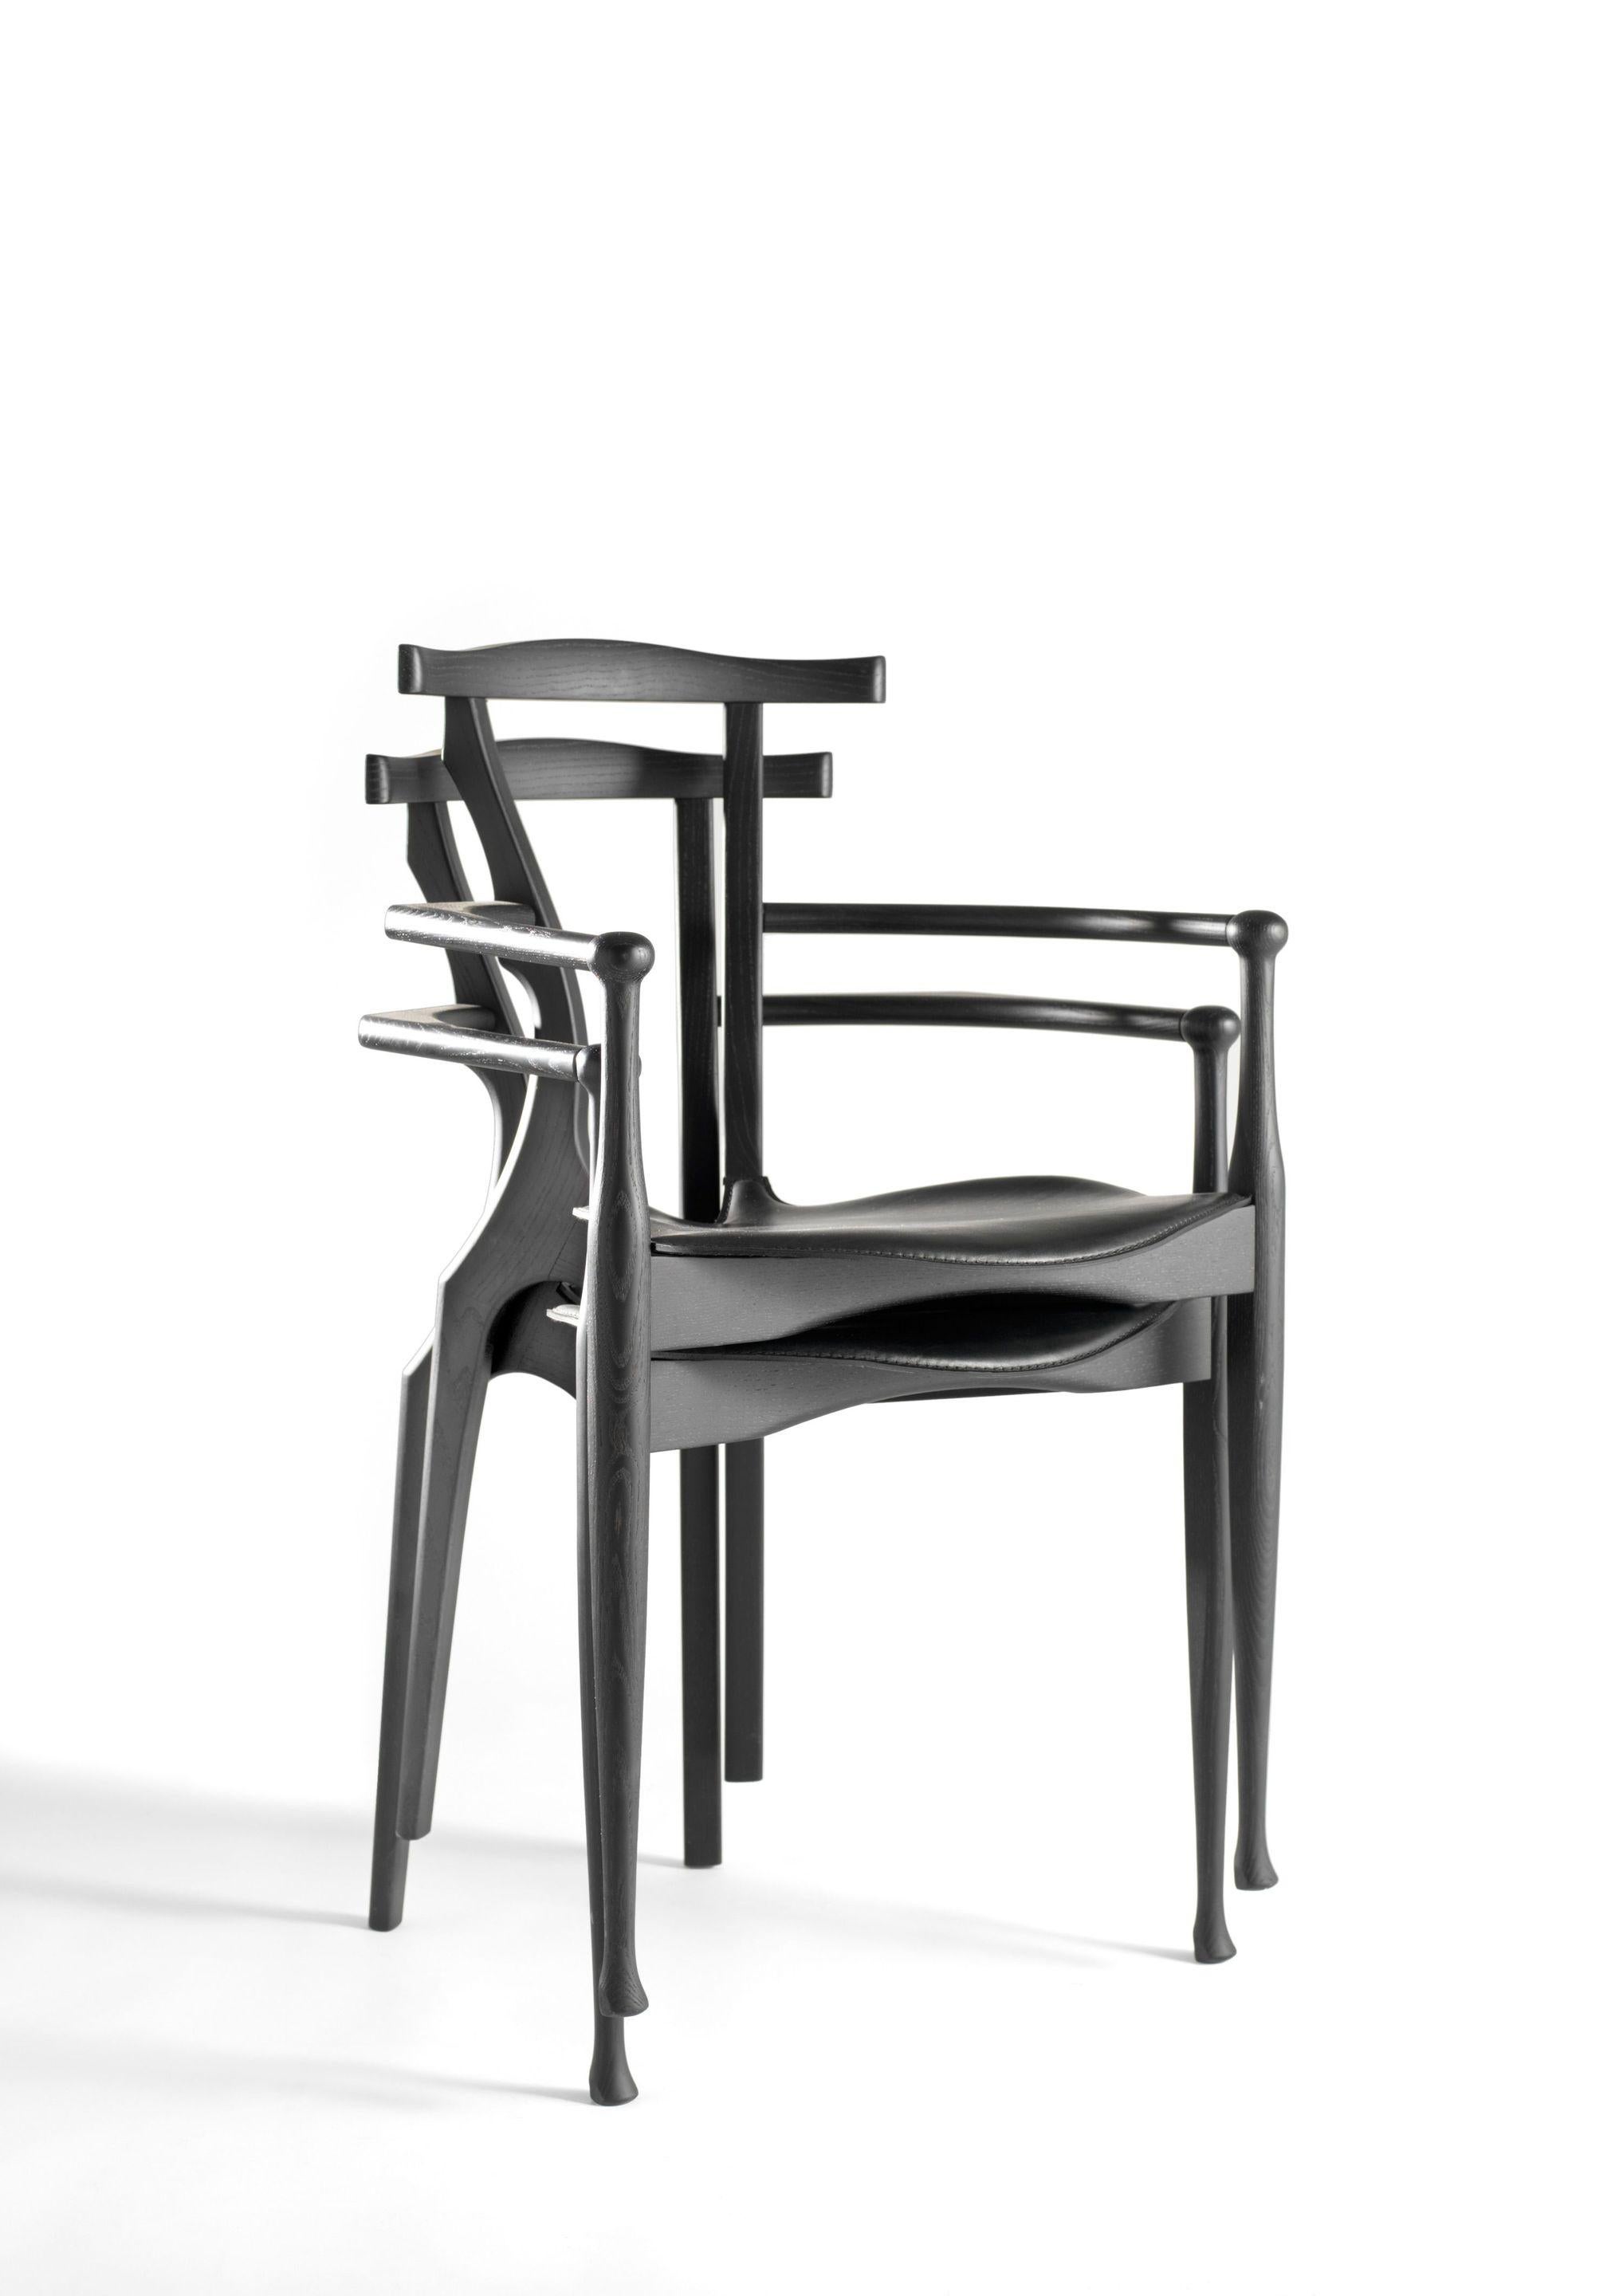 Gaulino stuhl von Oscar Tusquets
Abmessungen: T 51 x B 55 x H 84 cm 
MATERIAL: Struktur und Rückenlehne aus massiver Esche, schwarz lackiert oder lackiert. Sitzfläche gepolstert in Naturleder oder schwarzem Leder.
Erhältlich in schwarz.


Der